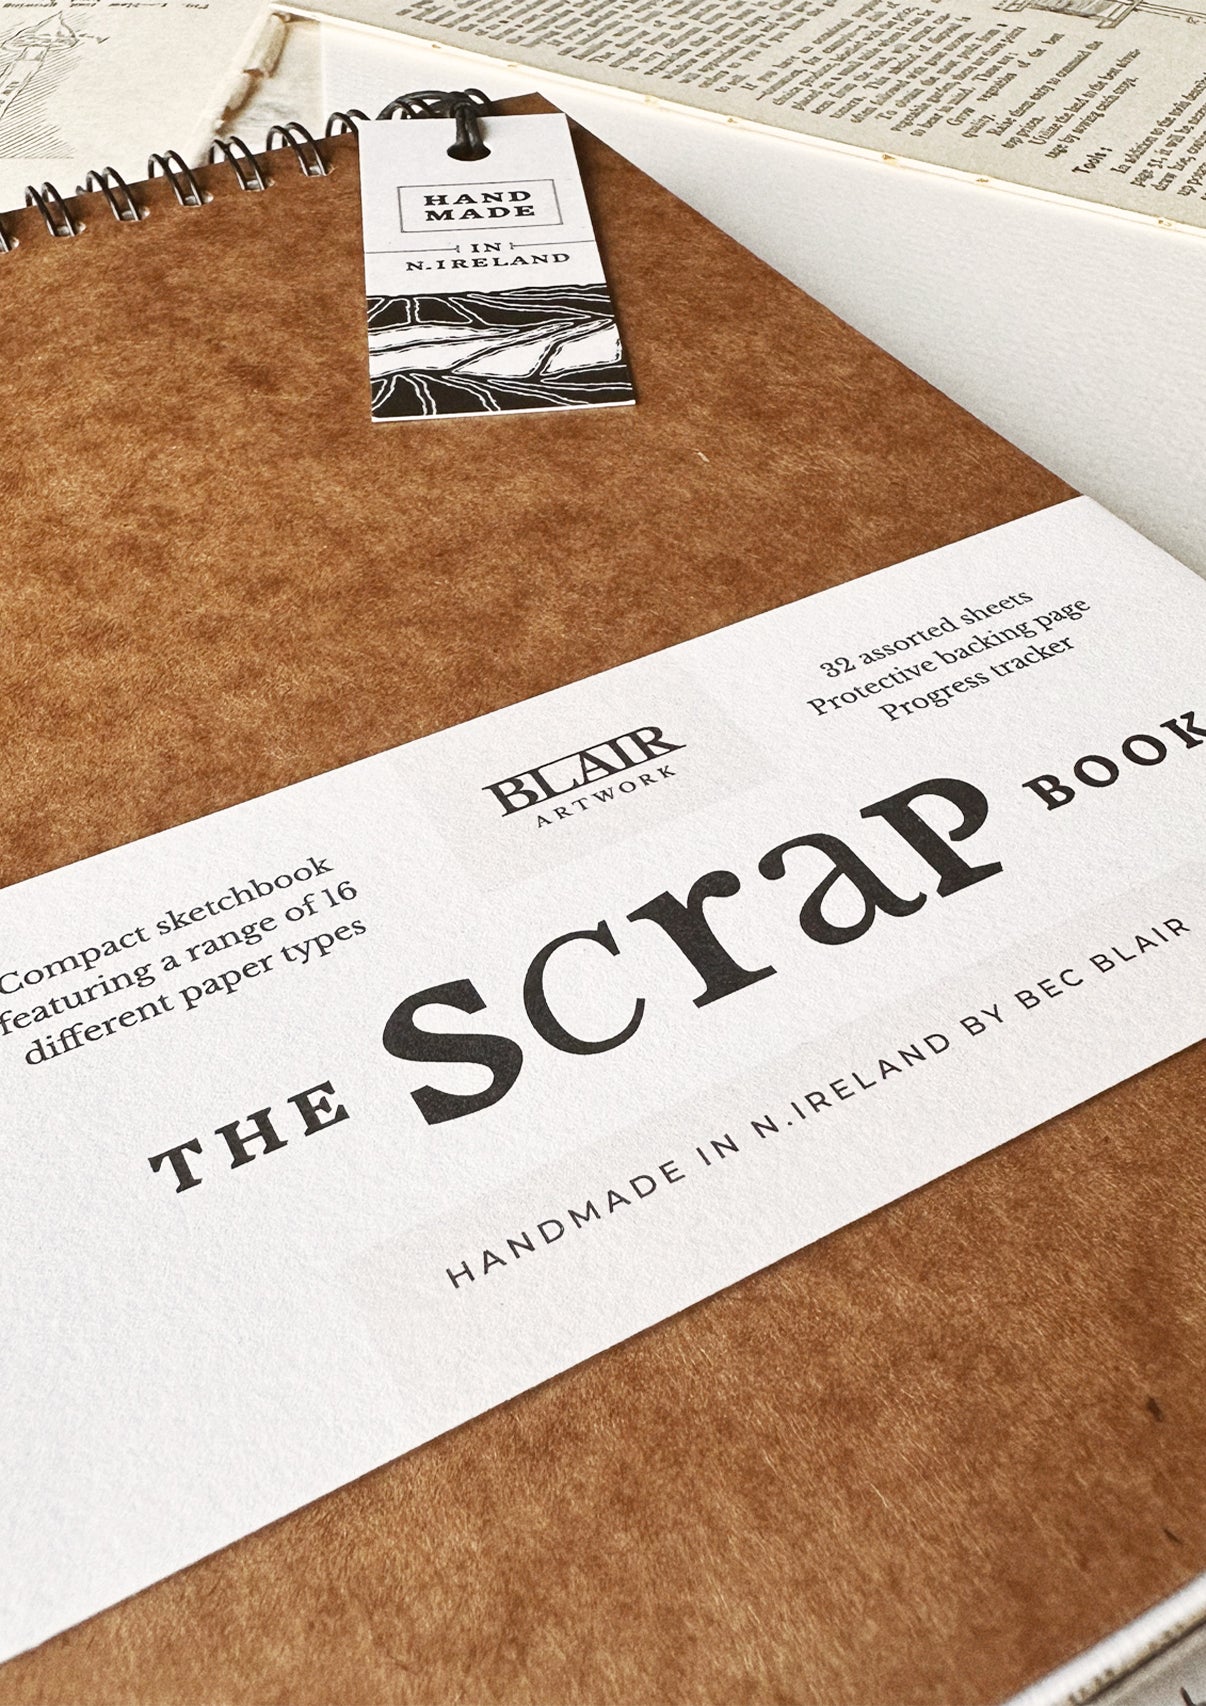 The Scrap Book